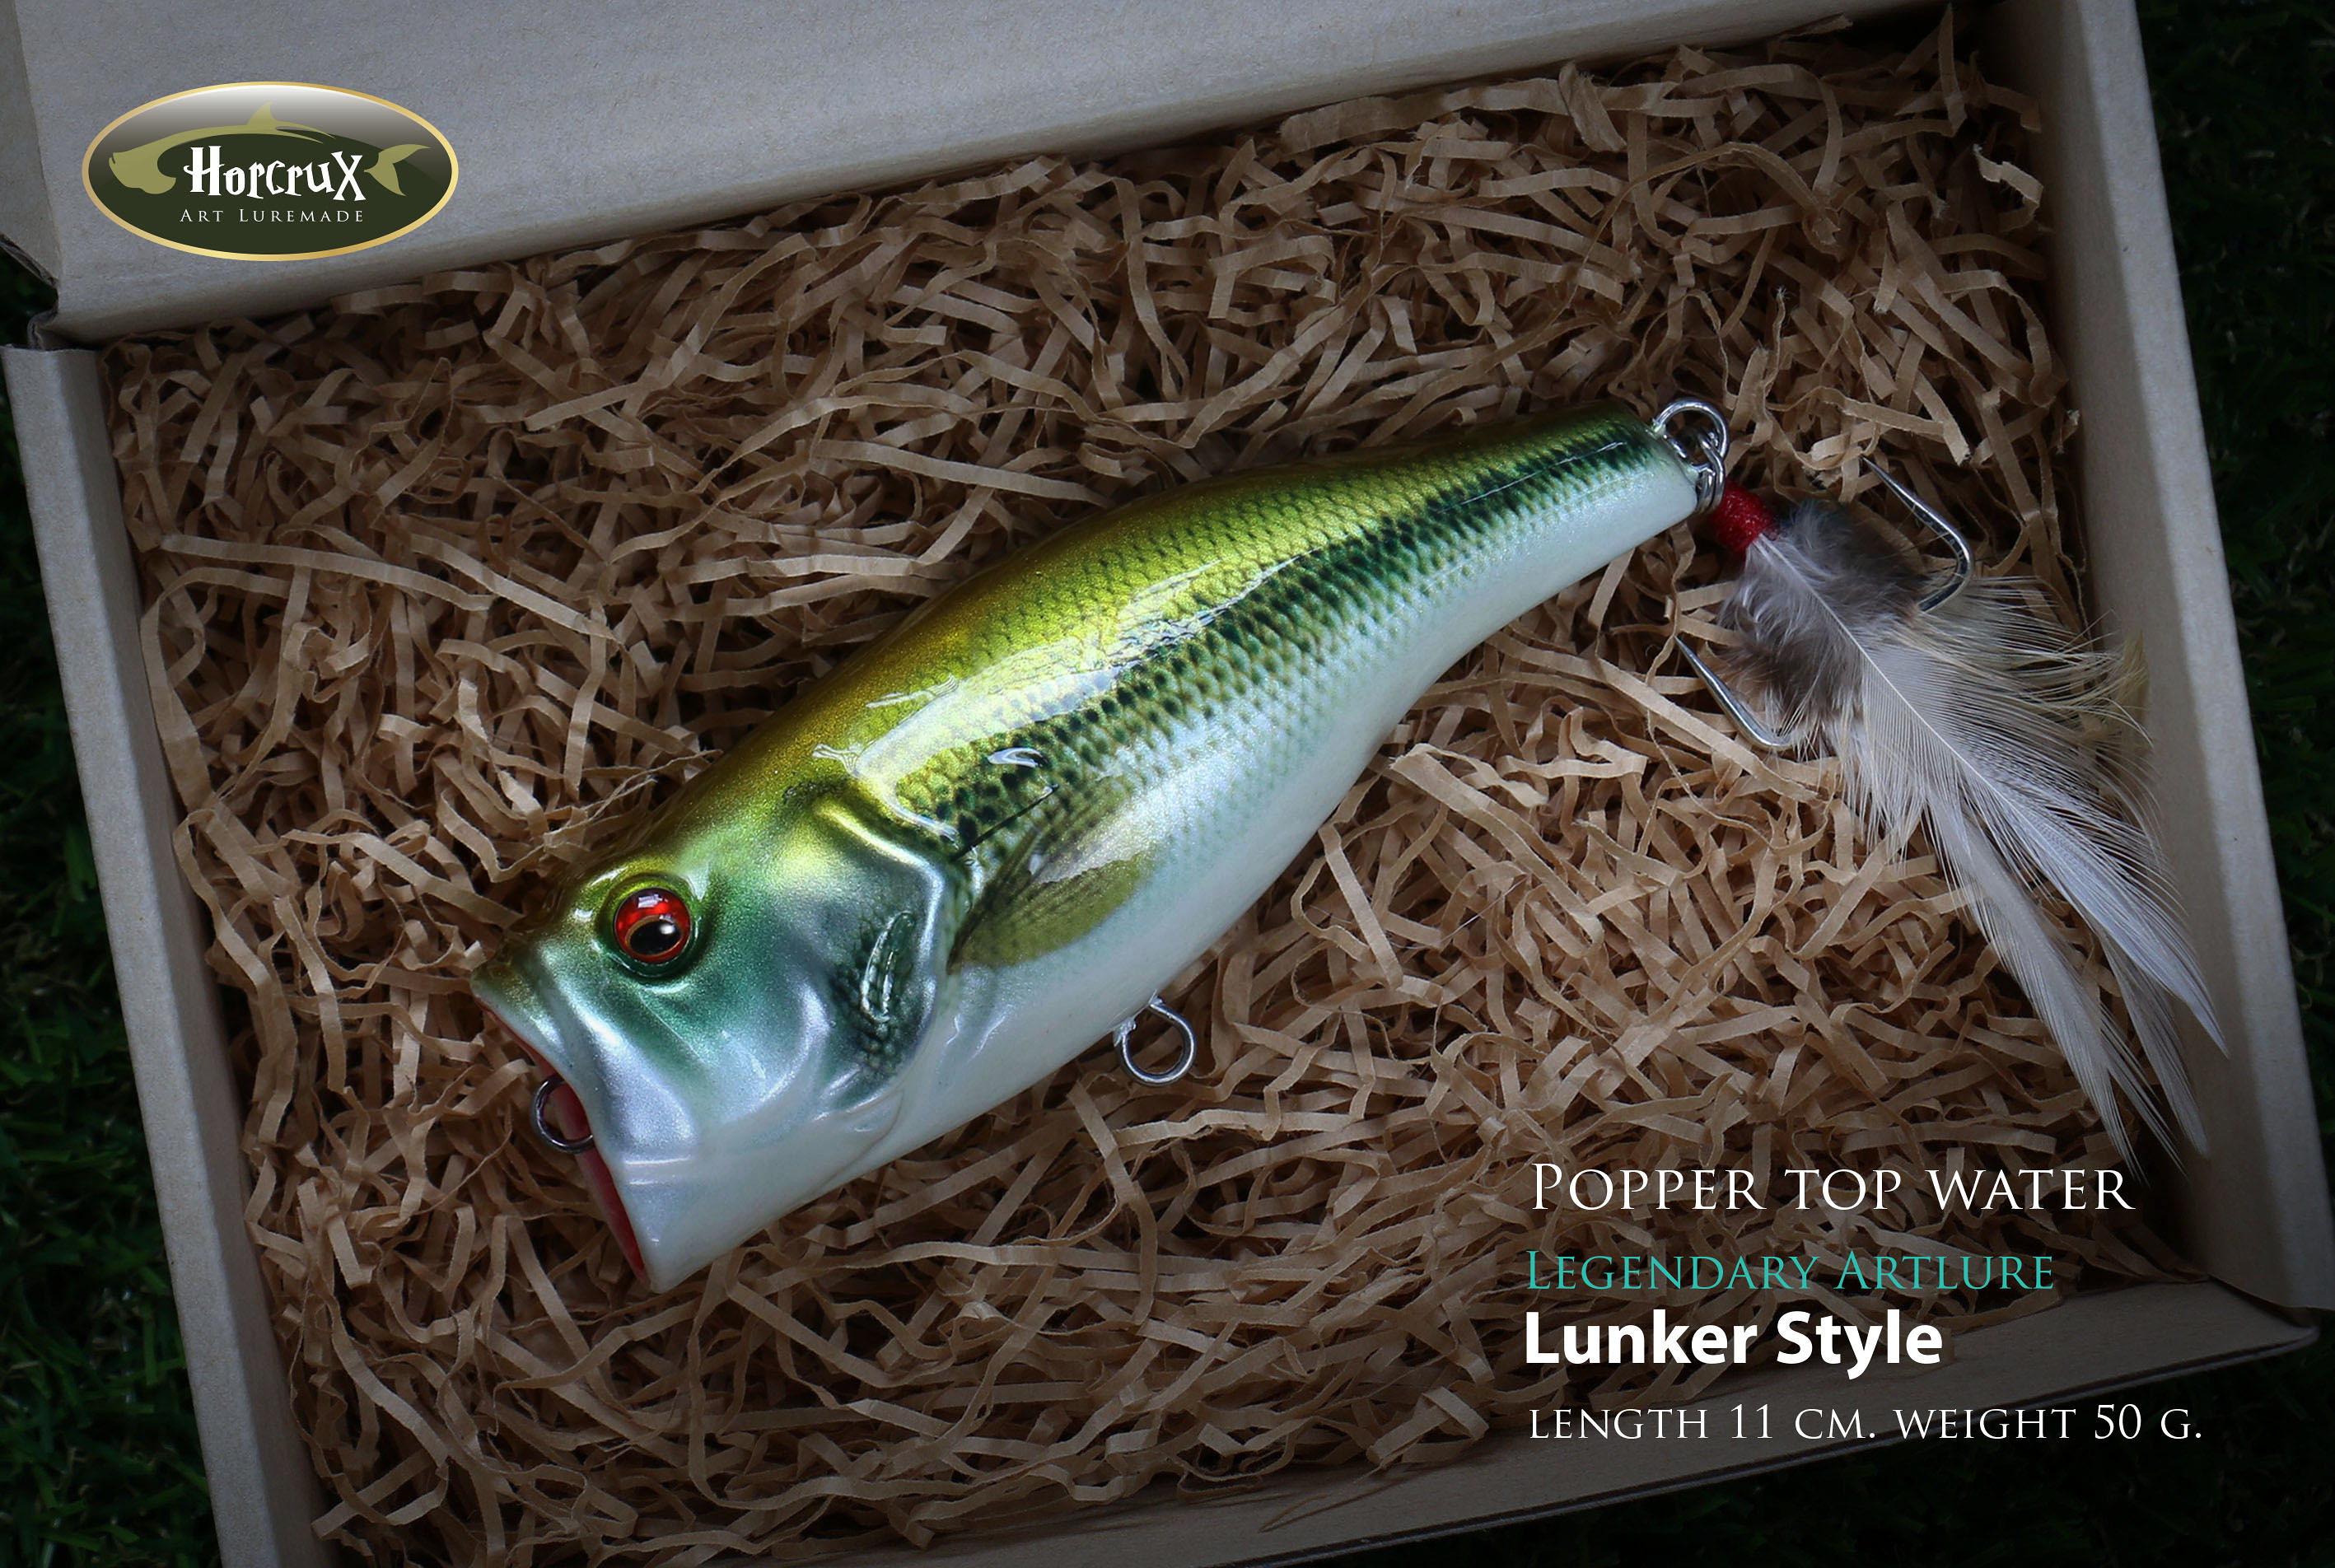 Popper legend : Lunker Style